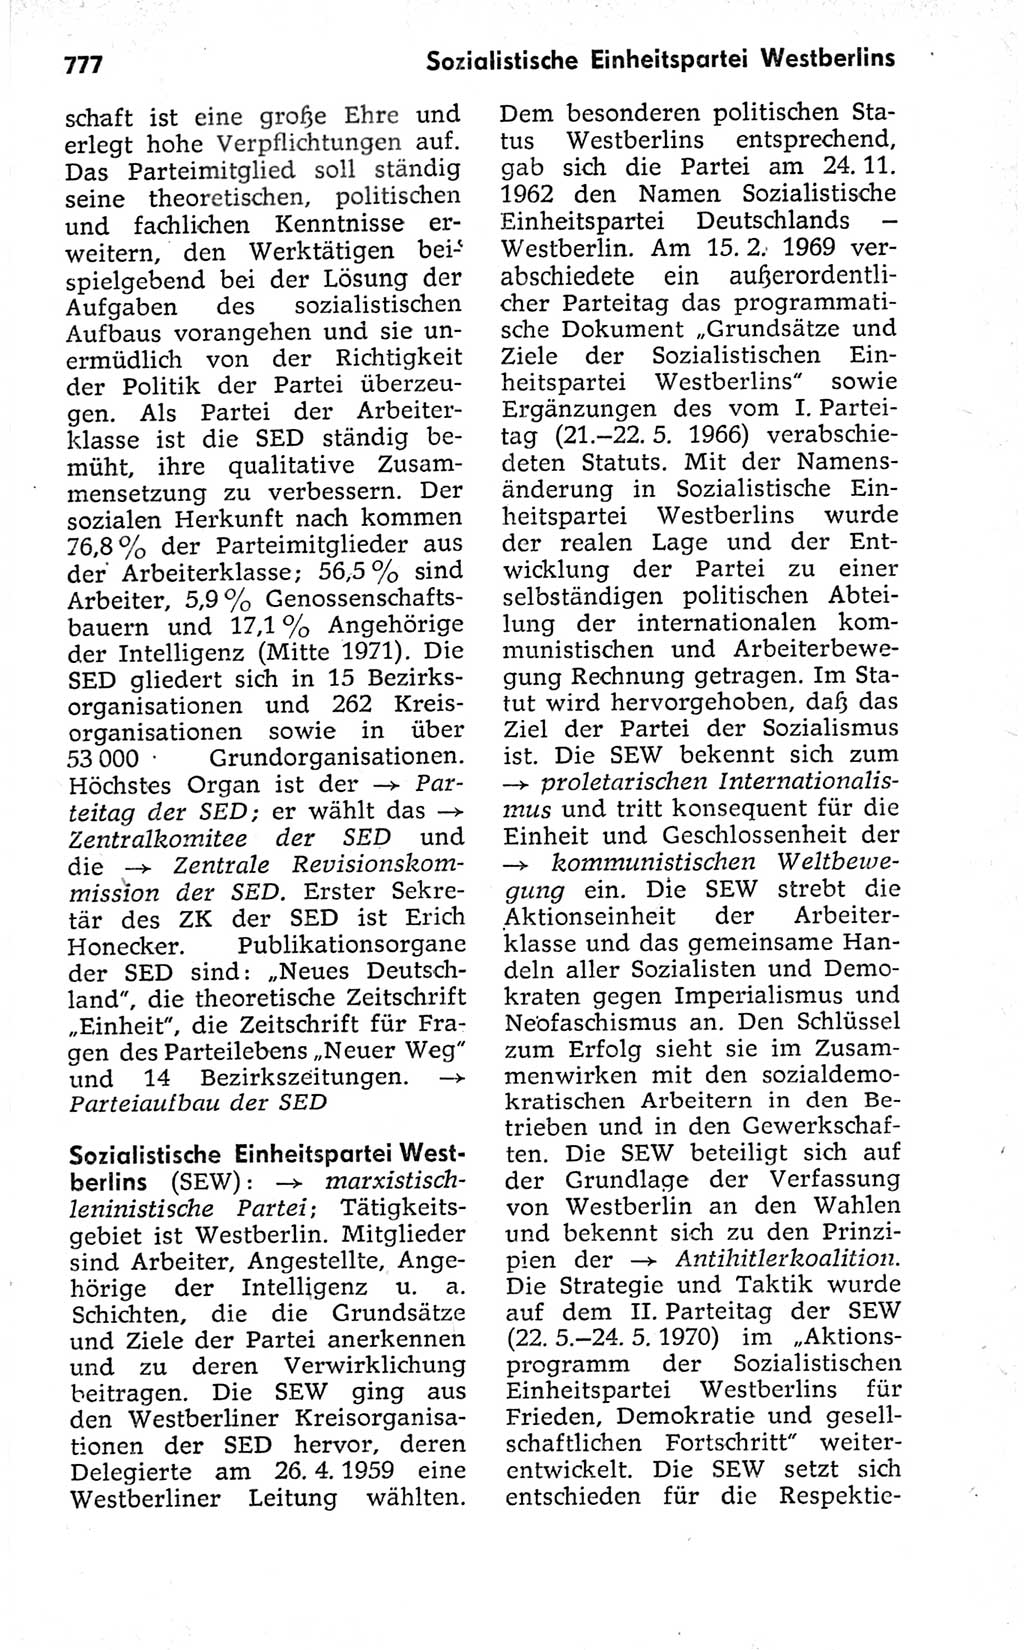 Kleines politisches Wörterbuch [Deutsche Demokratische Republik (DDR)] 1973, Seite 777 (Kl. pol. Wb. DDR 1973, S. 777)